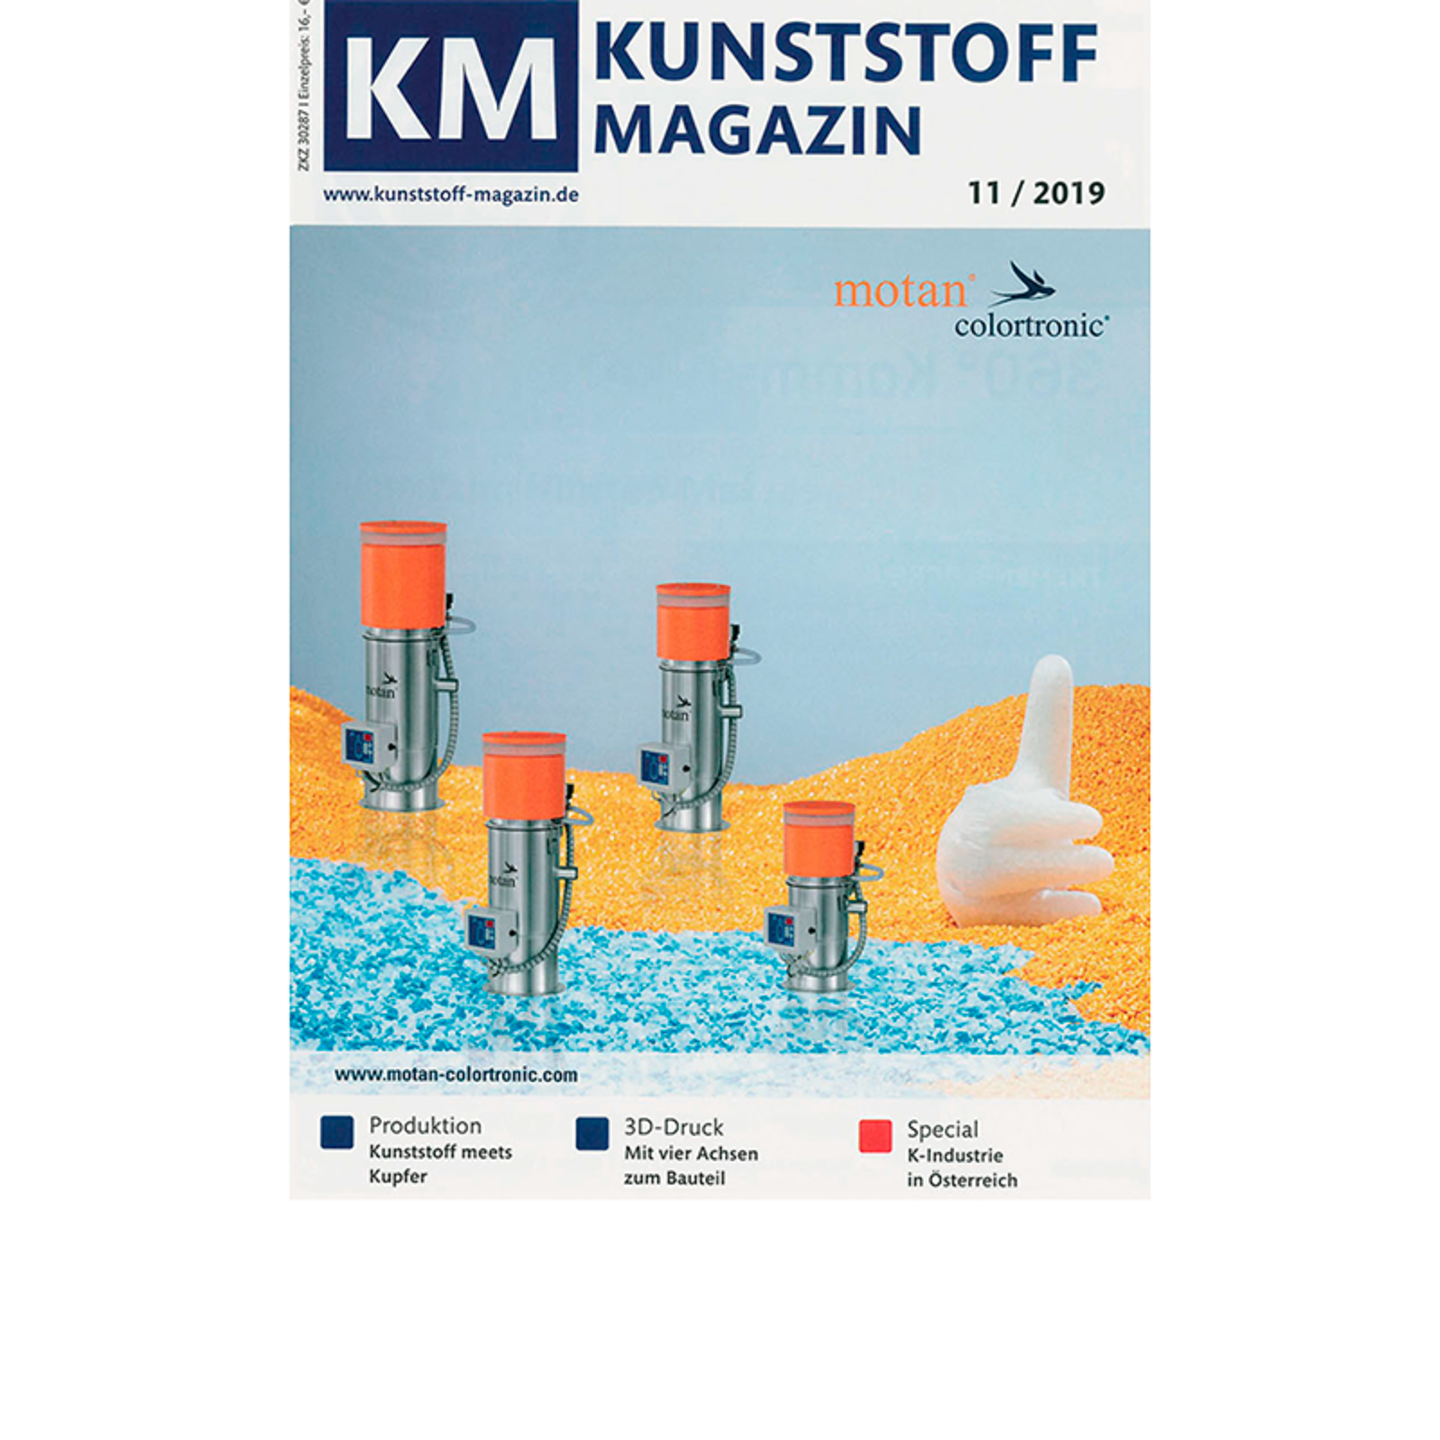 "Nachhaltig verpacken" Pressebericht von "KM-Kunststoffmagazin" zu Stephan Schaumstoffe